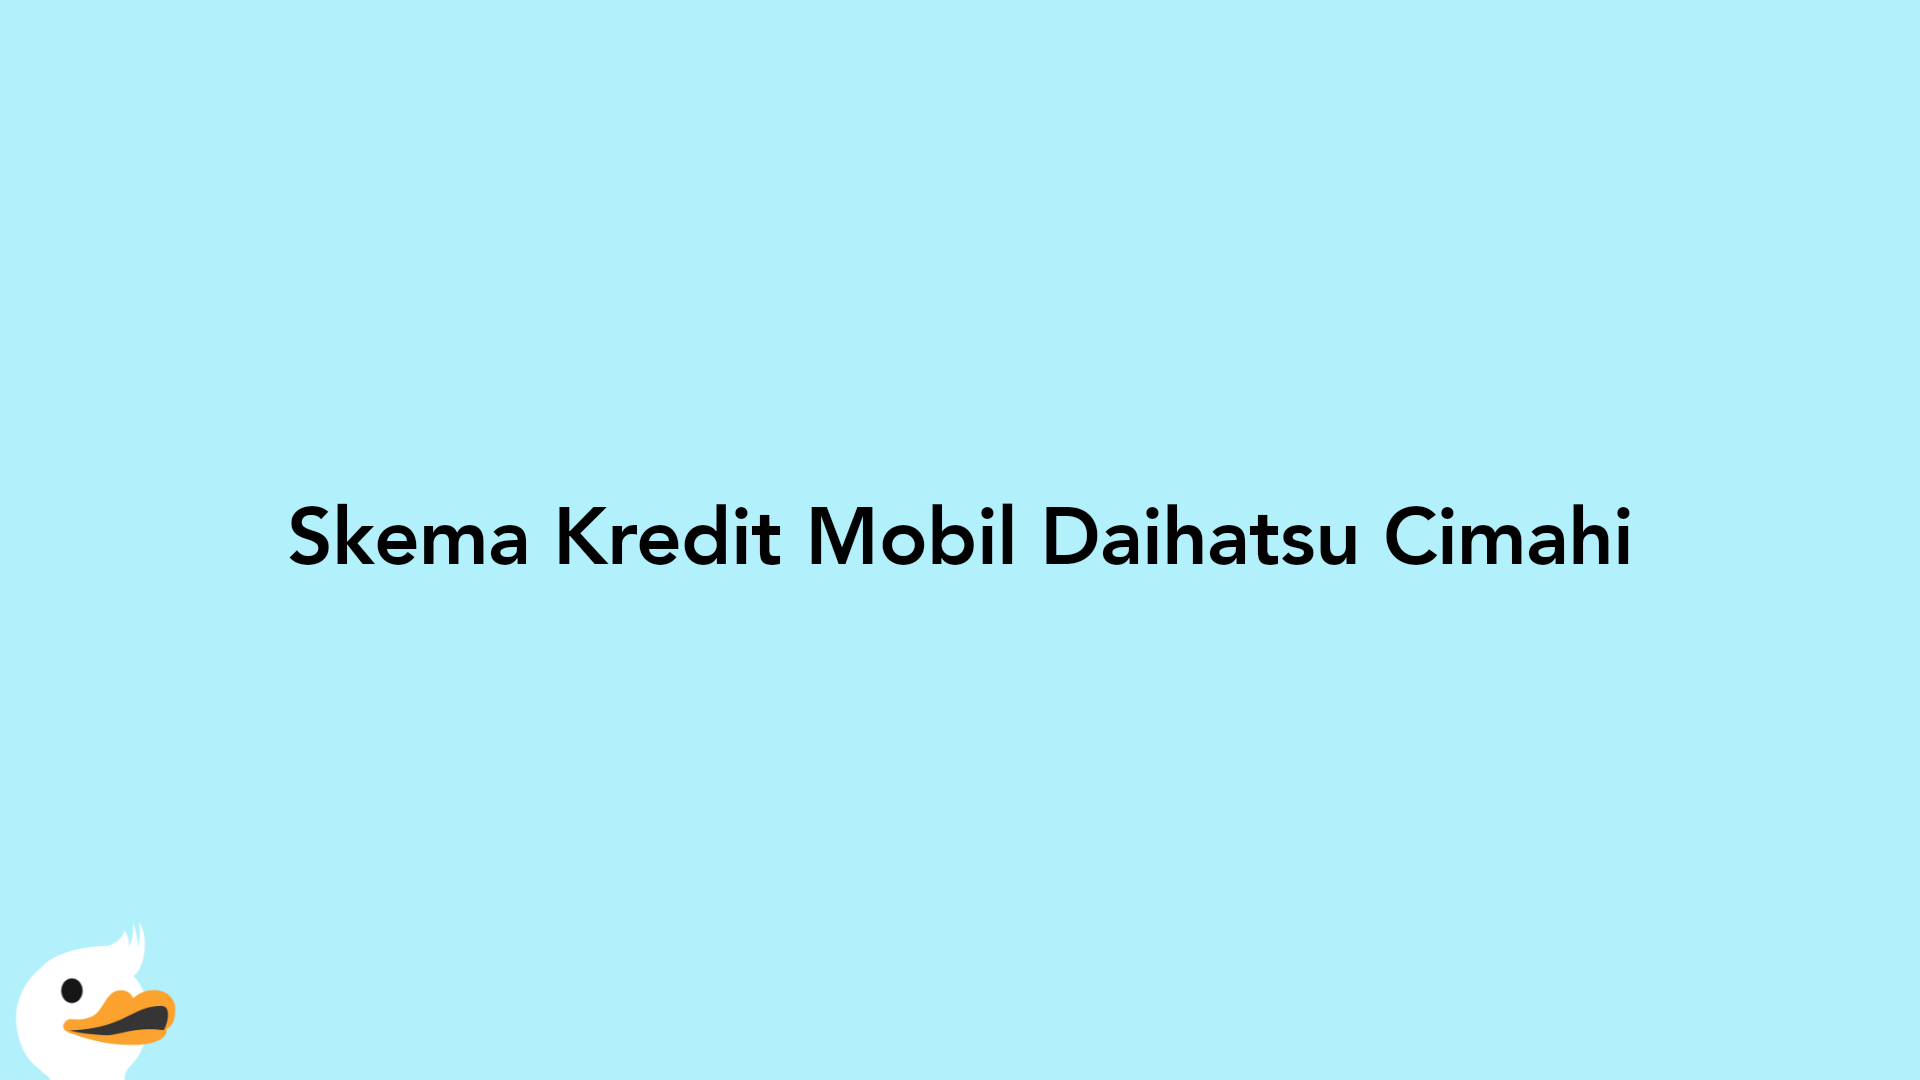 Skema Kredit Mobil Daihatsu Cimahi